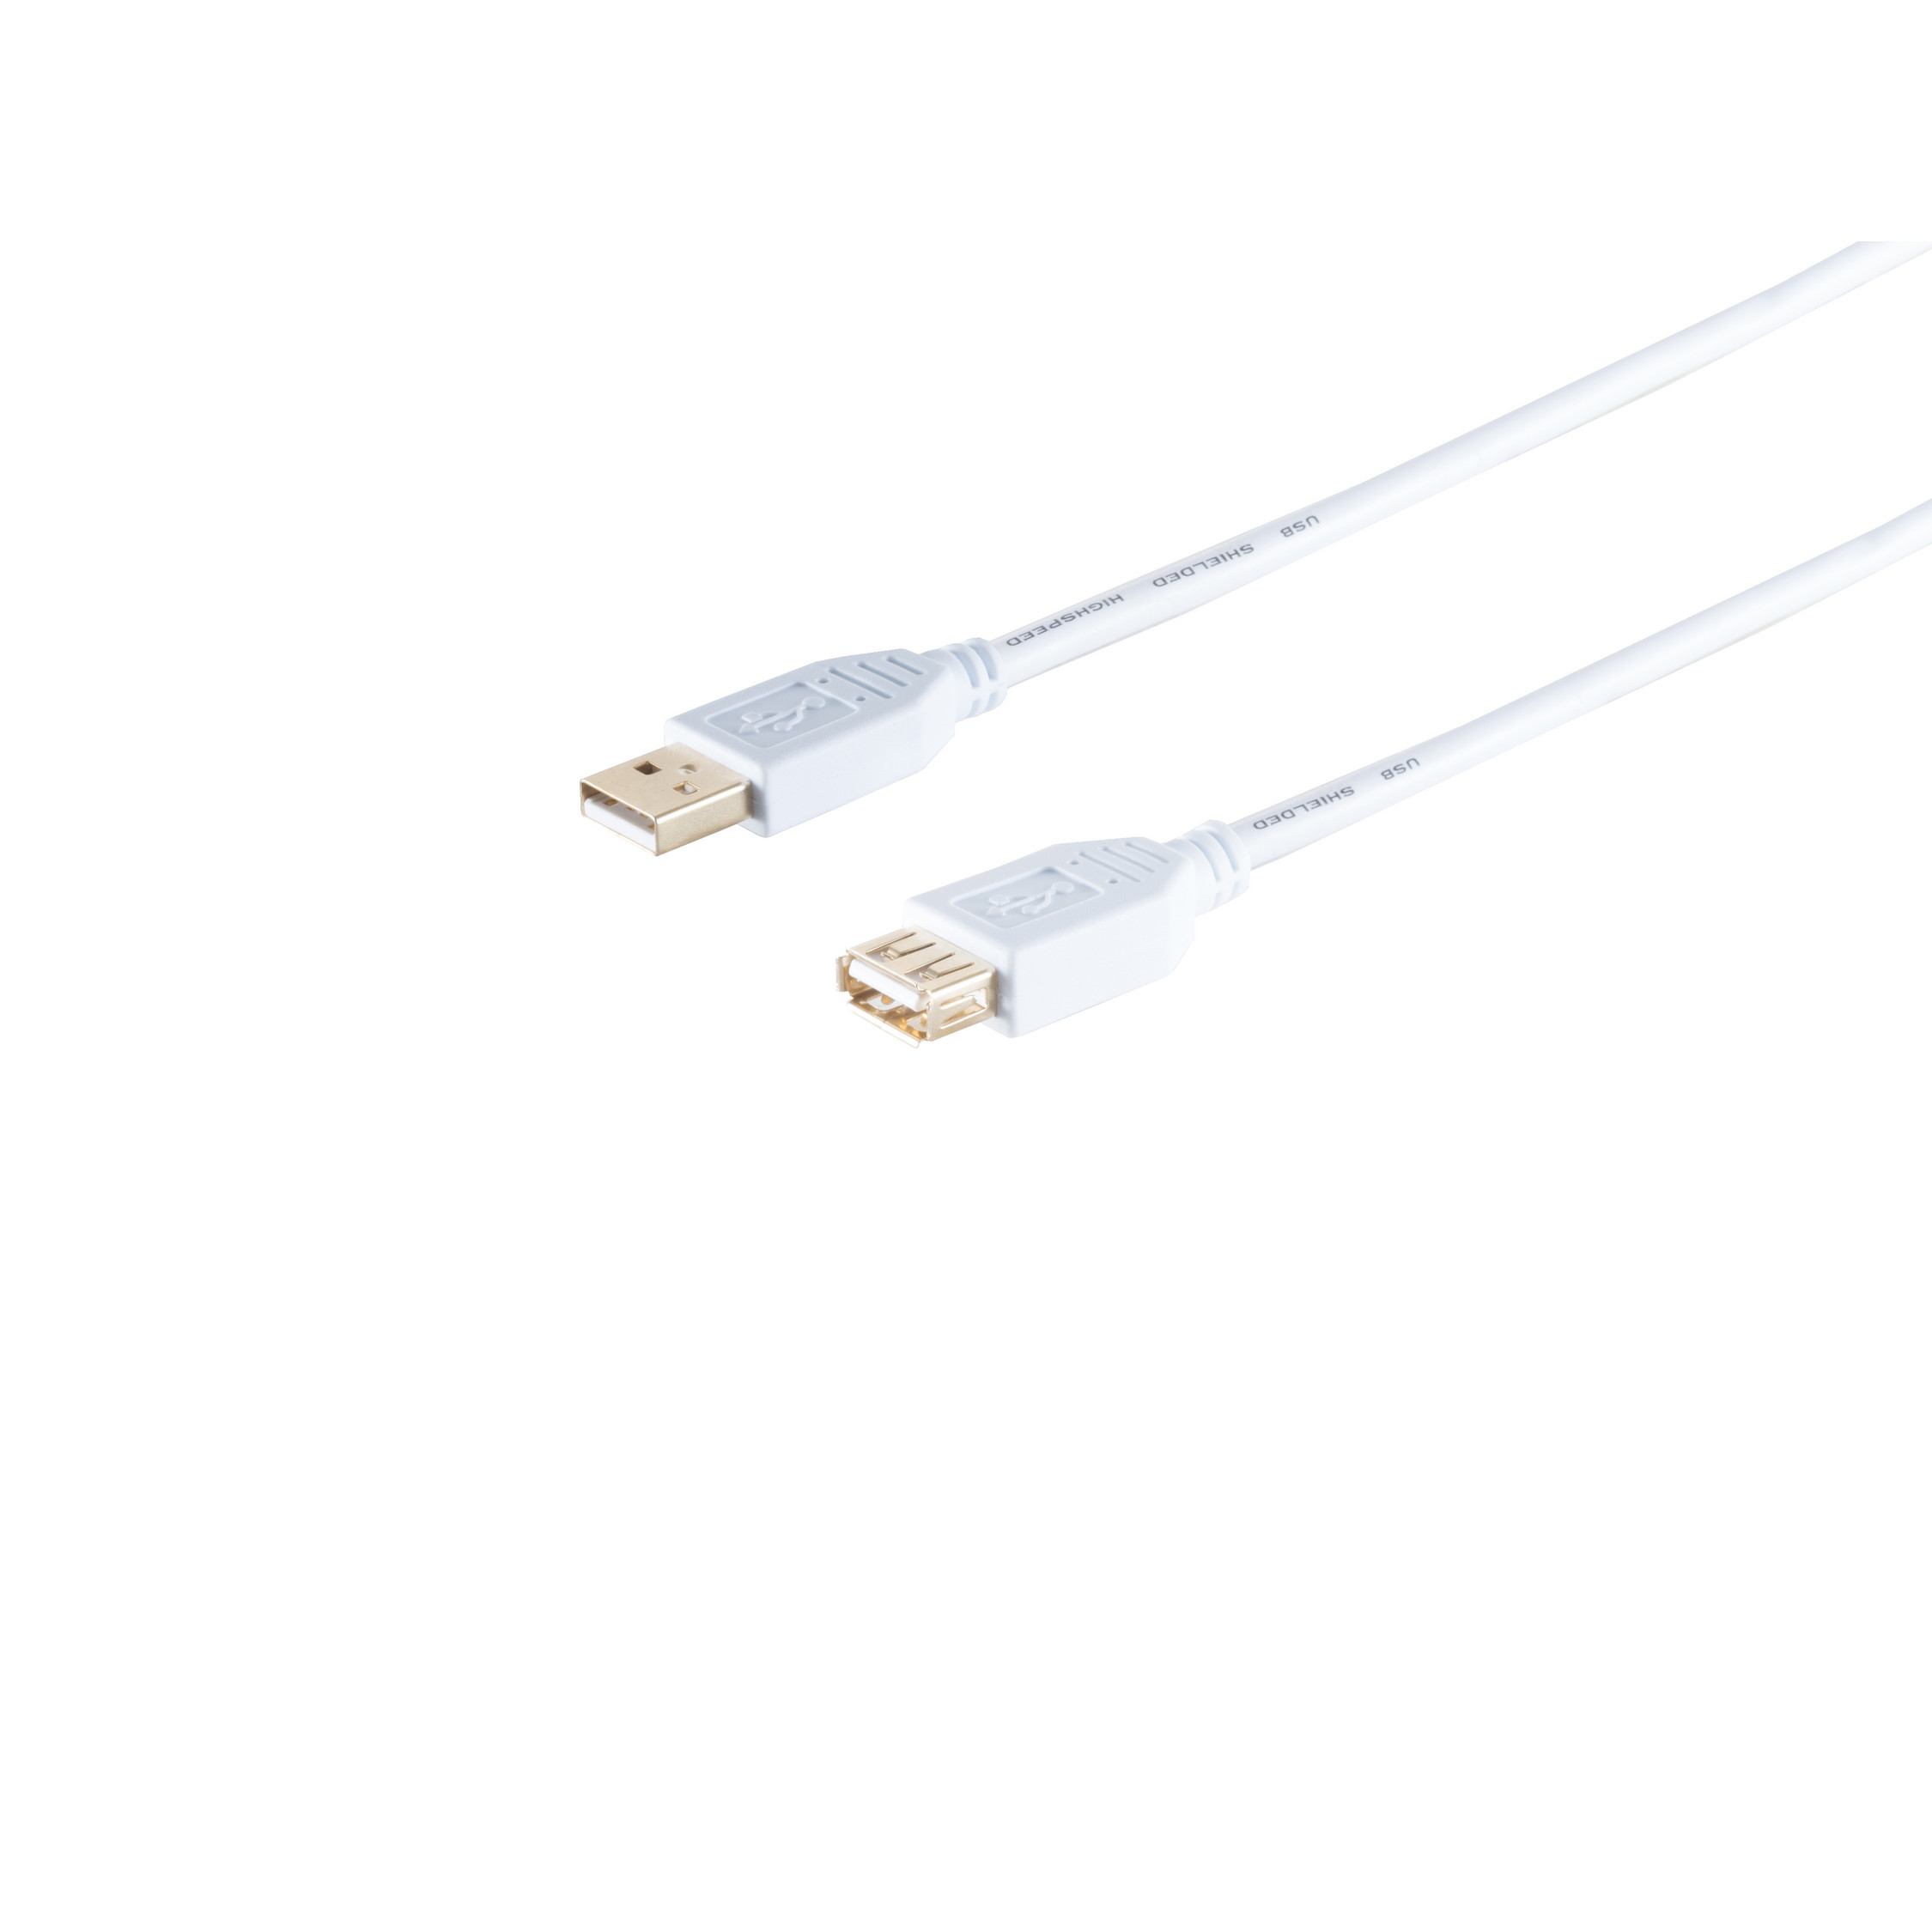 1m USB USB Buchse, weiß, Speed CONNECTIVITY S/CONN 2.0, A/A MAXIMUM Kabel 2.0 High USB Verlängerung,